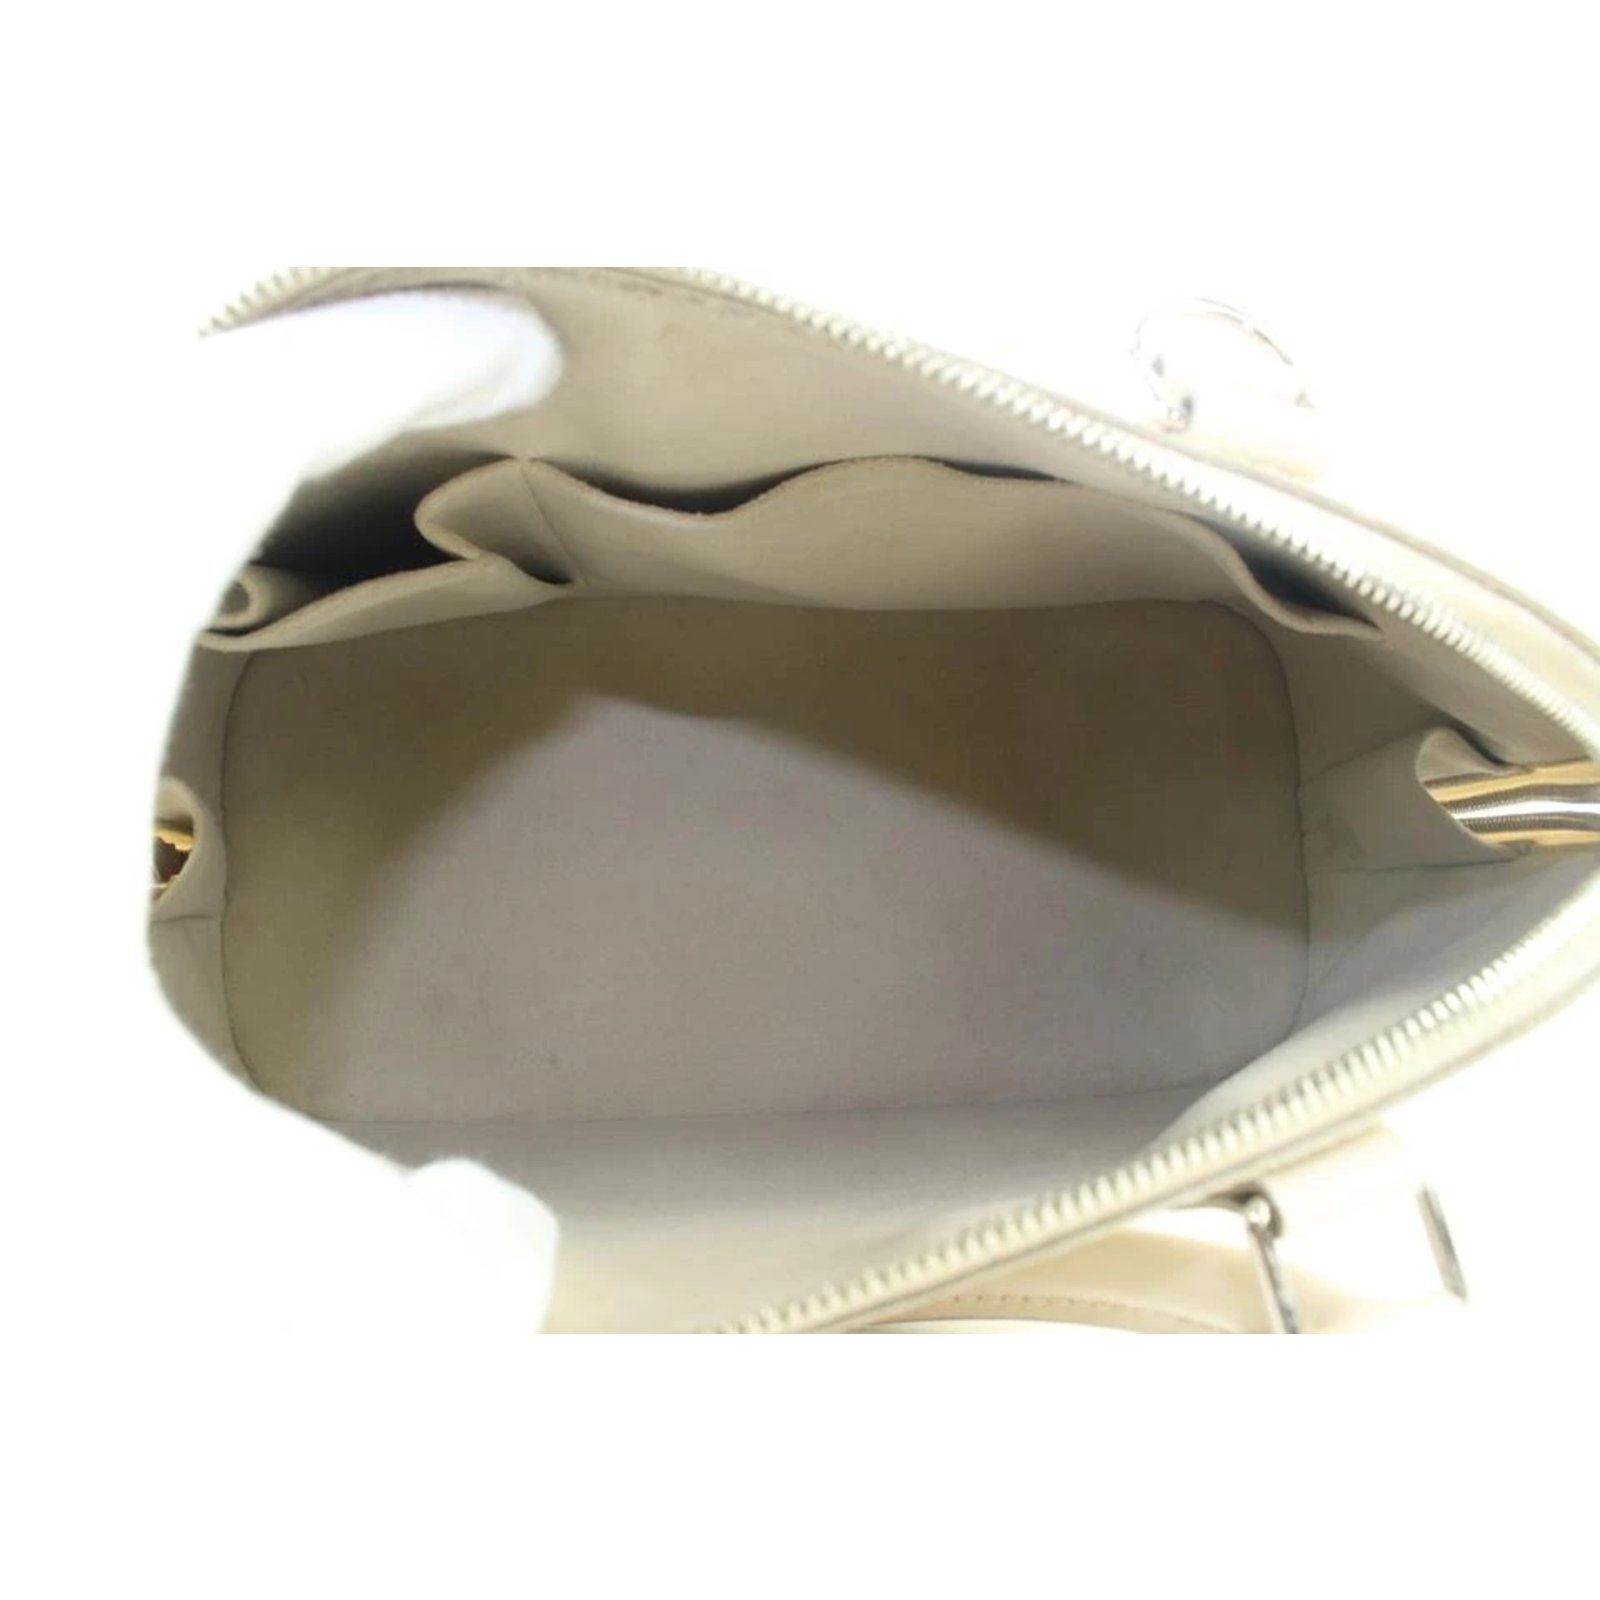 Louis Vuitton White Epi Leather Ivoy Alma PM NM Bag ref.310657